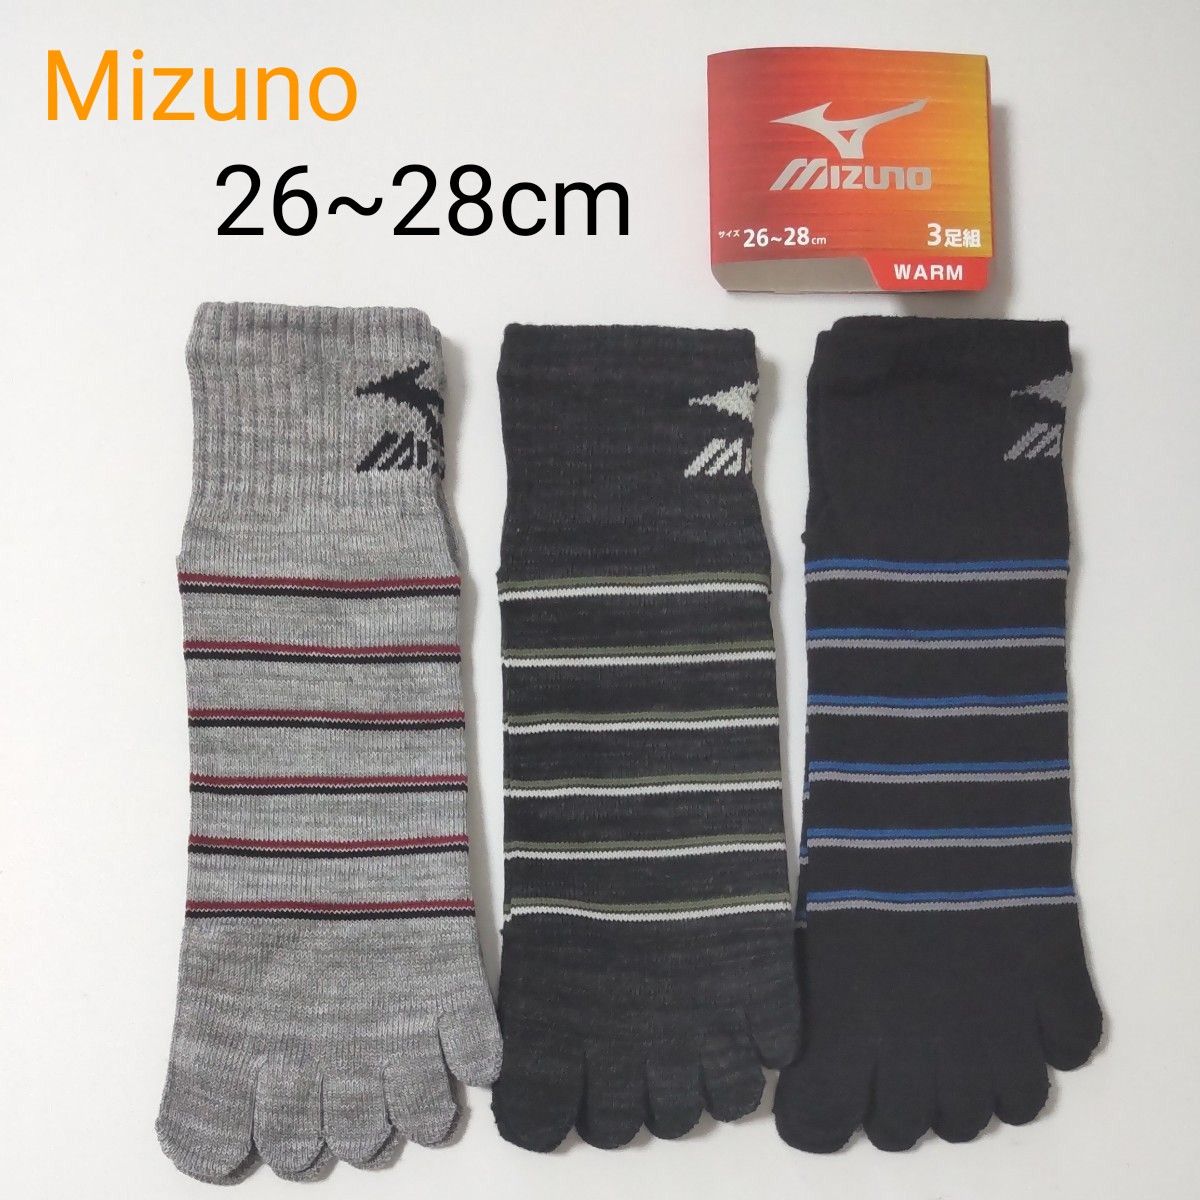 (新品)MIZUNO ミズノ 靴下 ソックス 5本指ソックス 3足組 26~28cm 大きめサイズ メンズ WARM